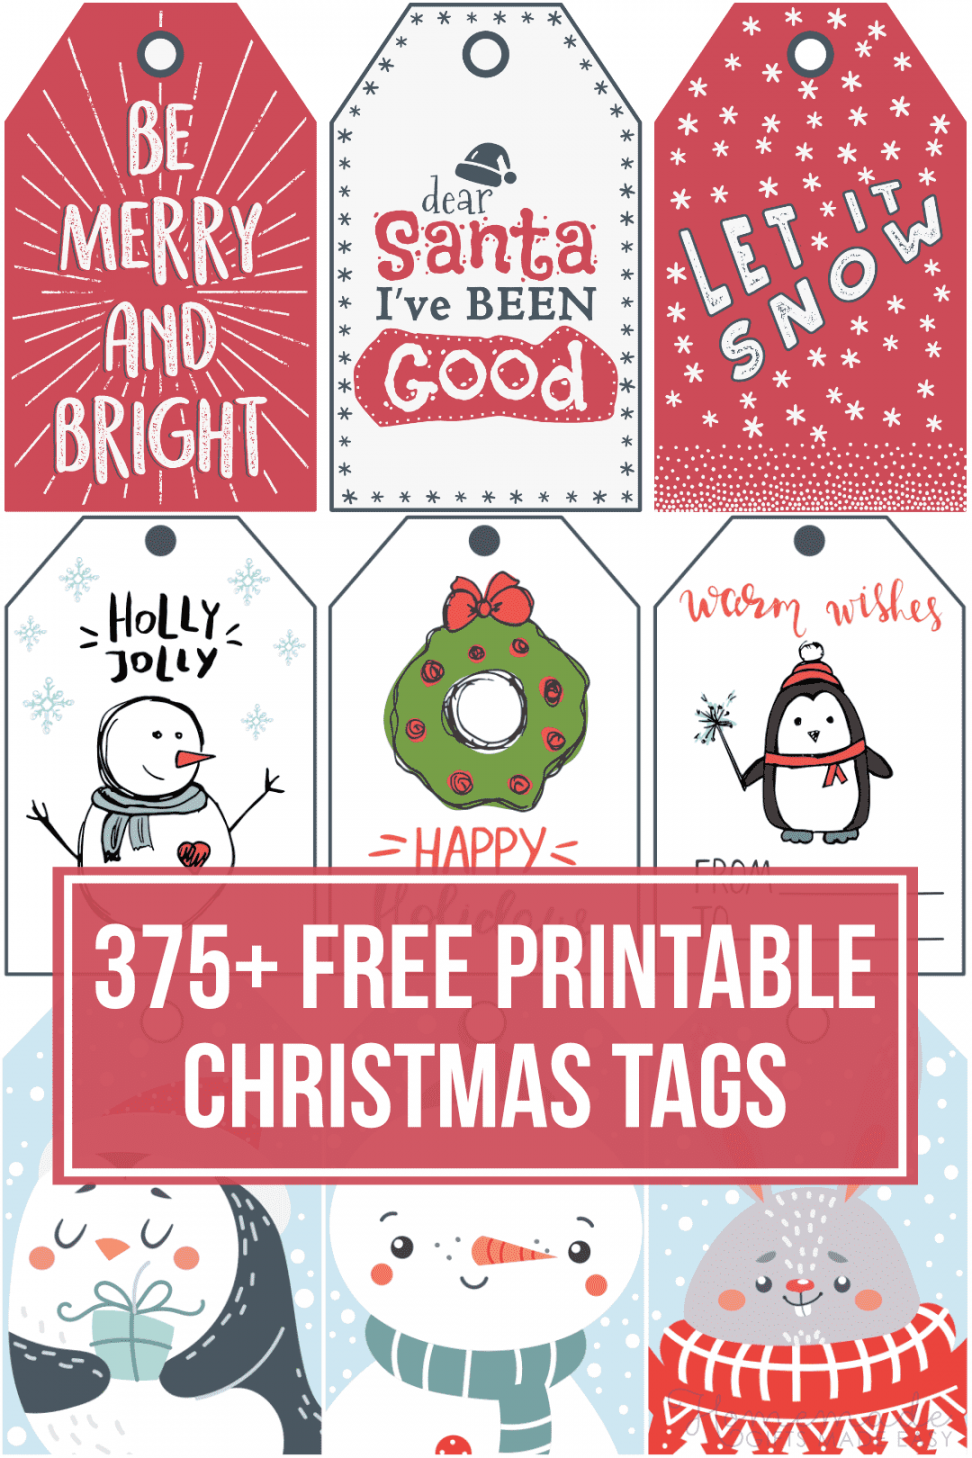 Printable Gift Tags Free - Printable - + Free Printable Christmas Tags for your Holiday Gifts